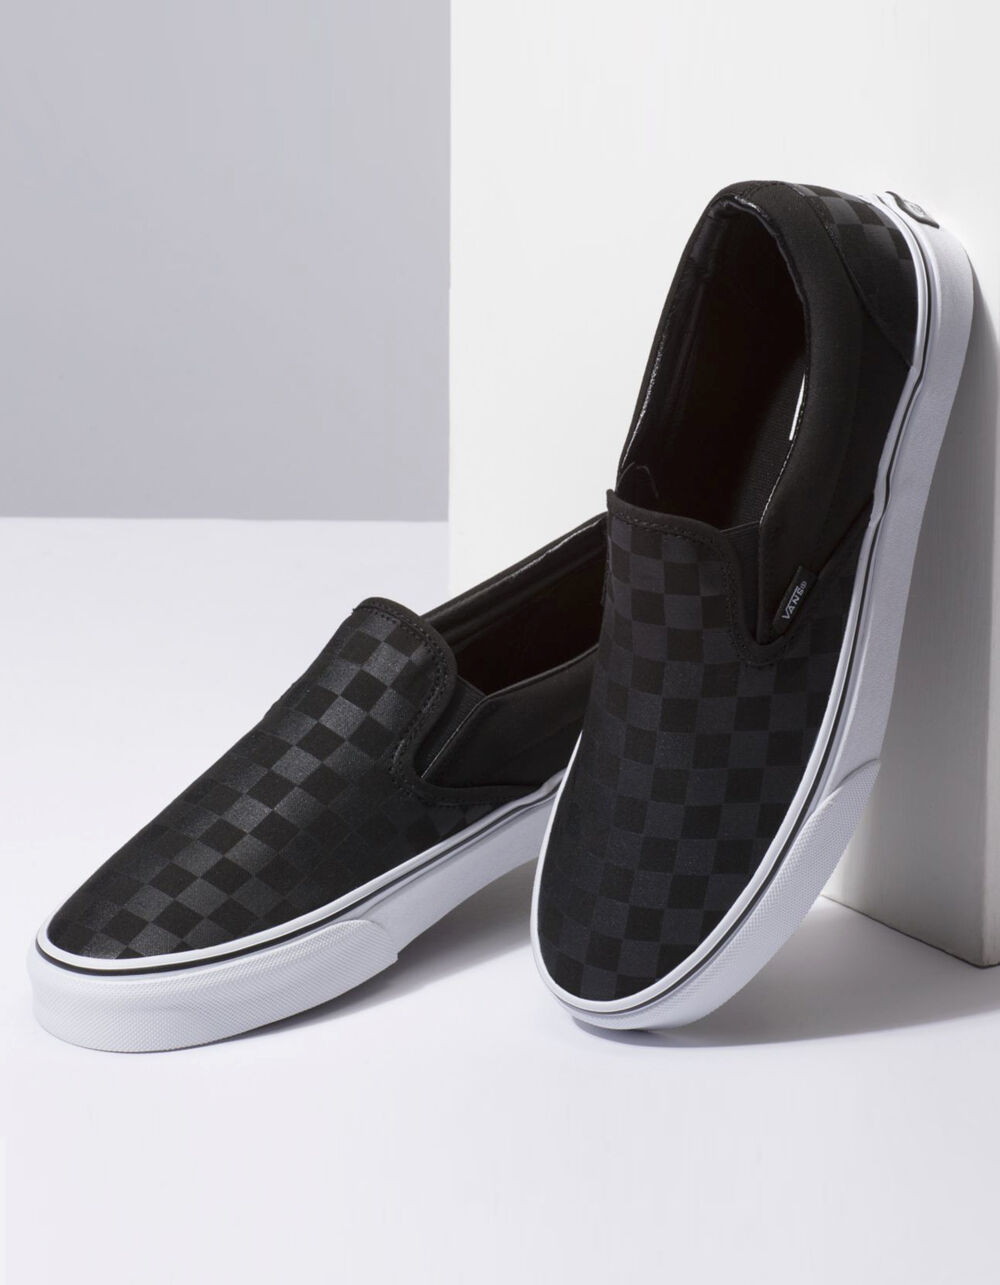 VANS Checkerboard Slip-On Black & Black Shoes image number 3